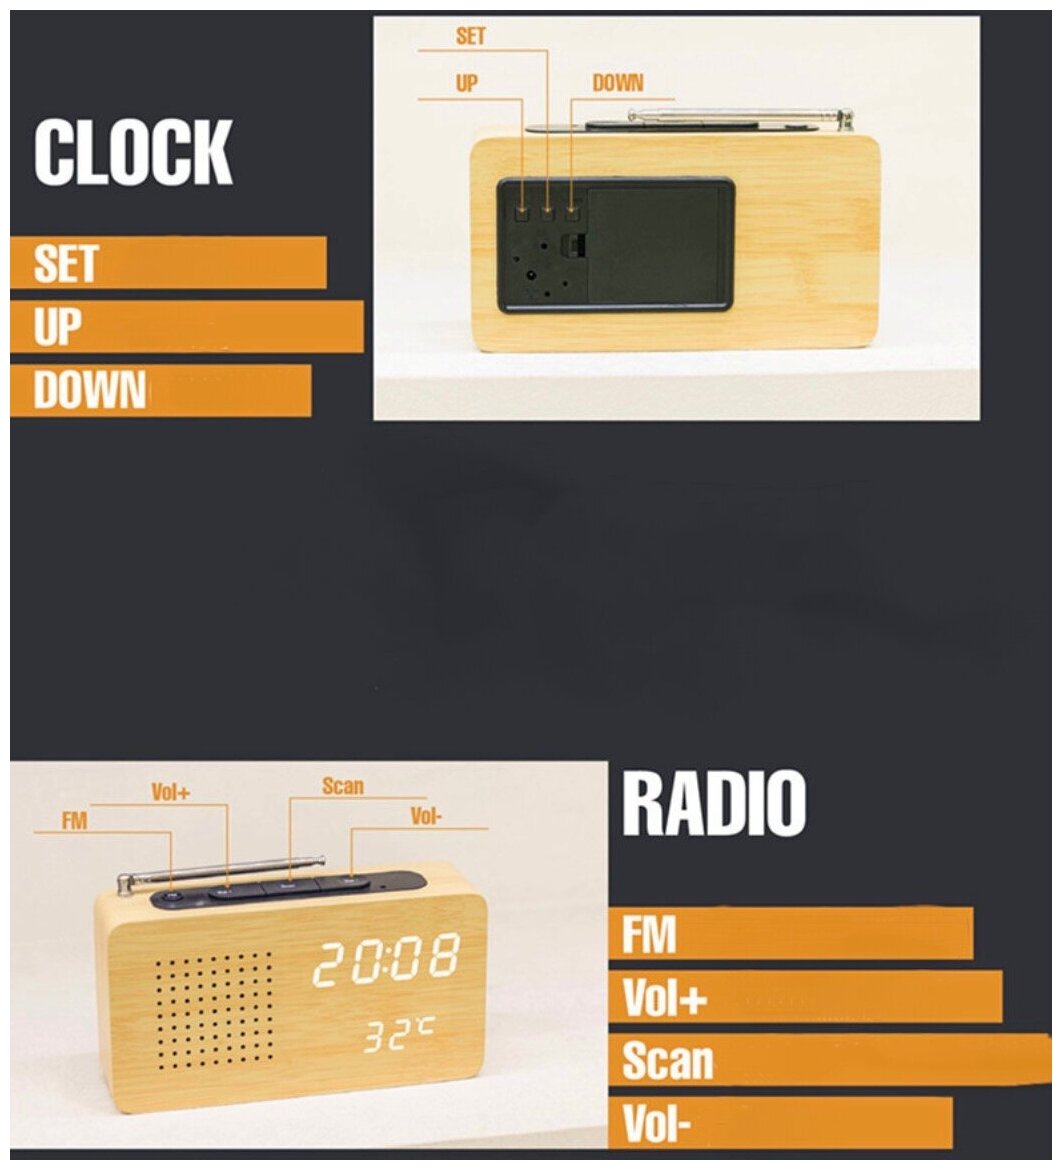 Заводские светодиодные цифровые деревянные часы радио-будильник MyPads Premium M153-558 идеальный бизнес подарок любимому мужчине отцу дедушке дя